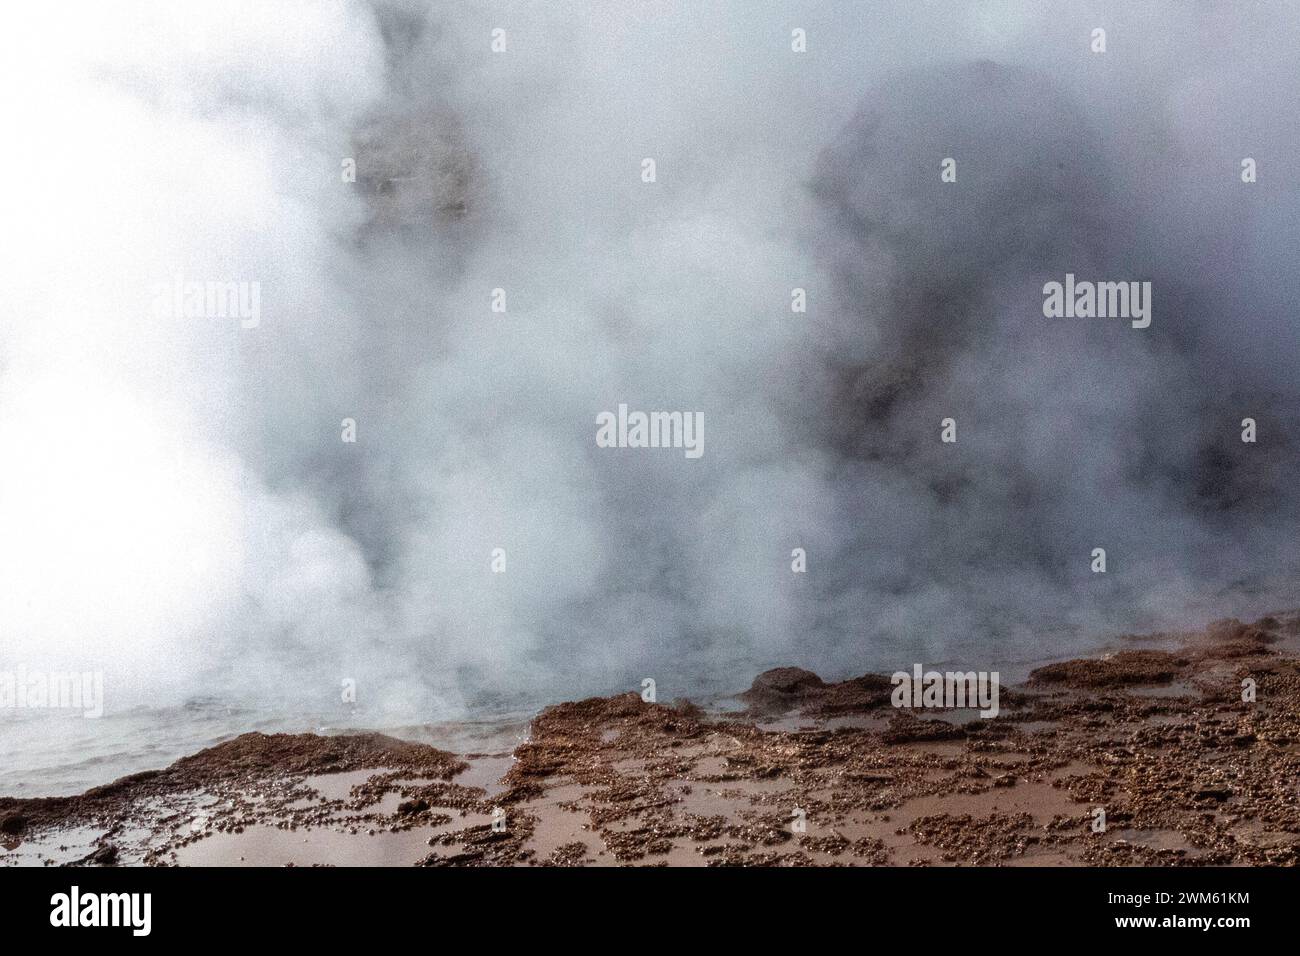 Tatio Geysers, San Pedro de Atacama, Chili. Sources chaudes volcaniques qui produisent de façon spectaculaire l'eau chaude et les fontaines de vapeur à partir du sol. Banque D'Images